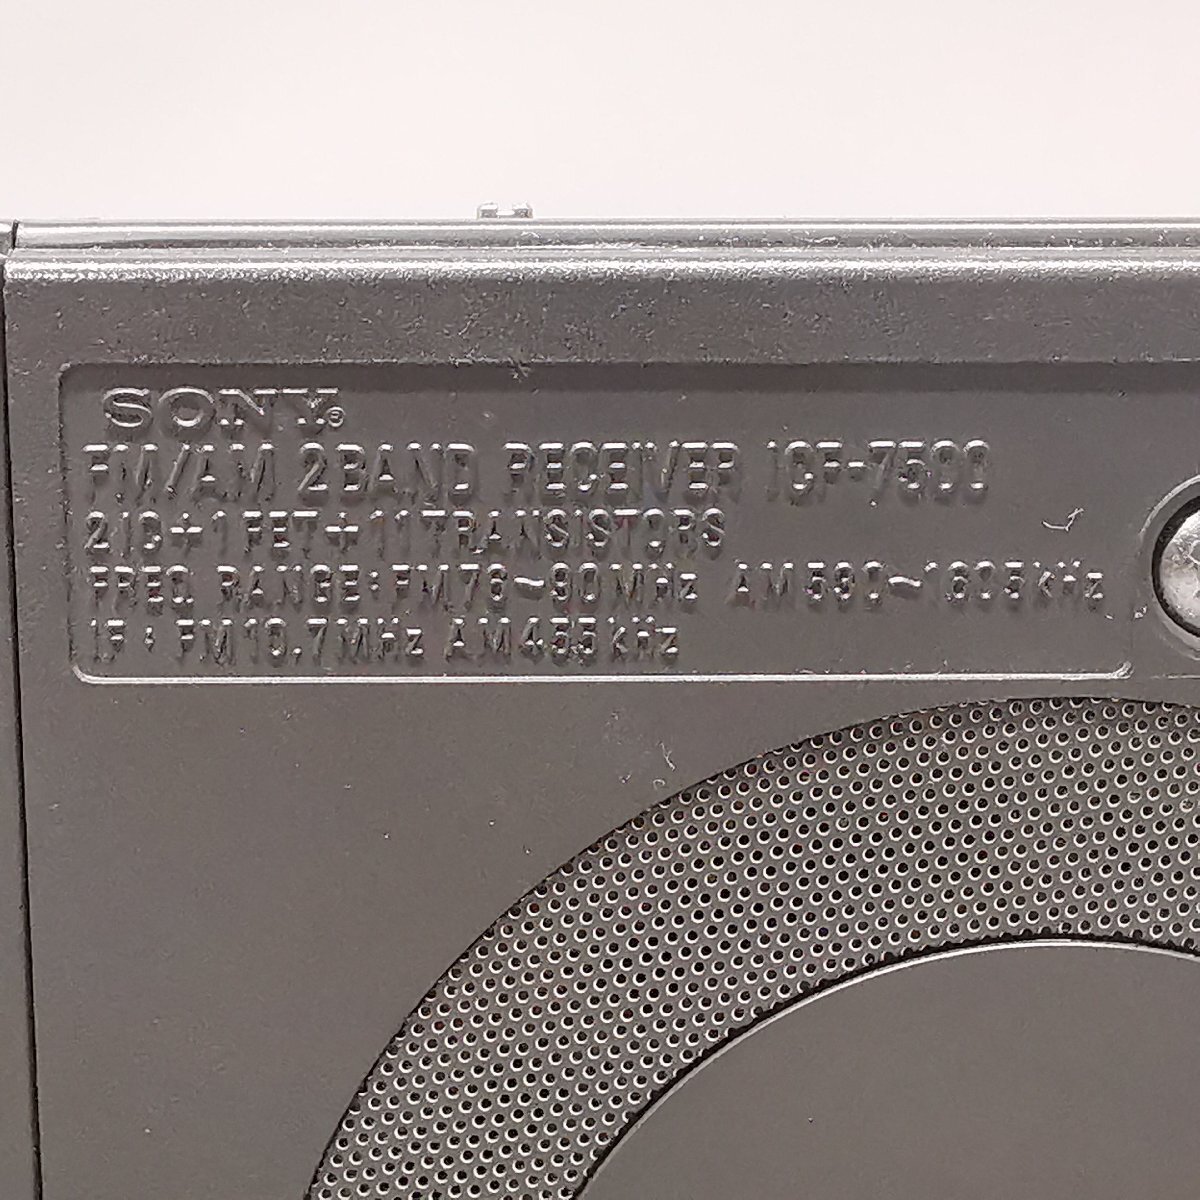  рабочий товар Showa Retro SONY Sony ICF-7500 AM FM радио динамик съемный портативный радио Z5778